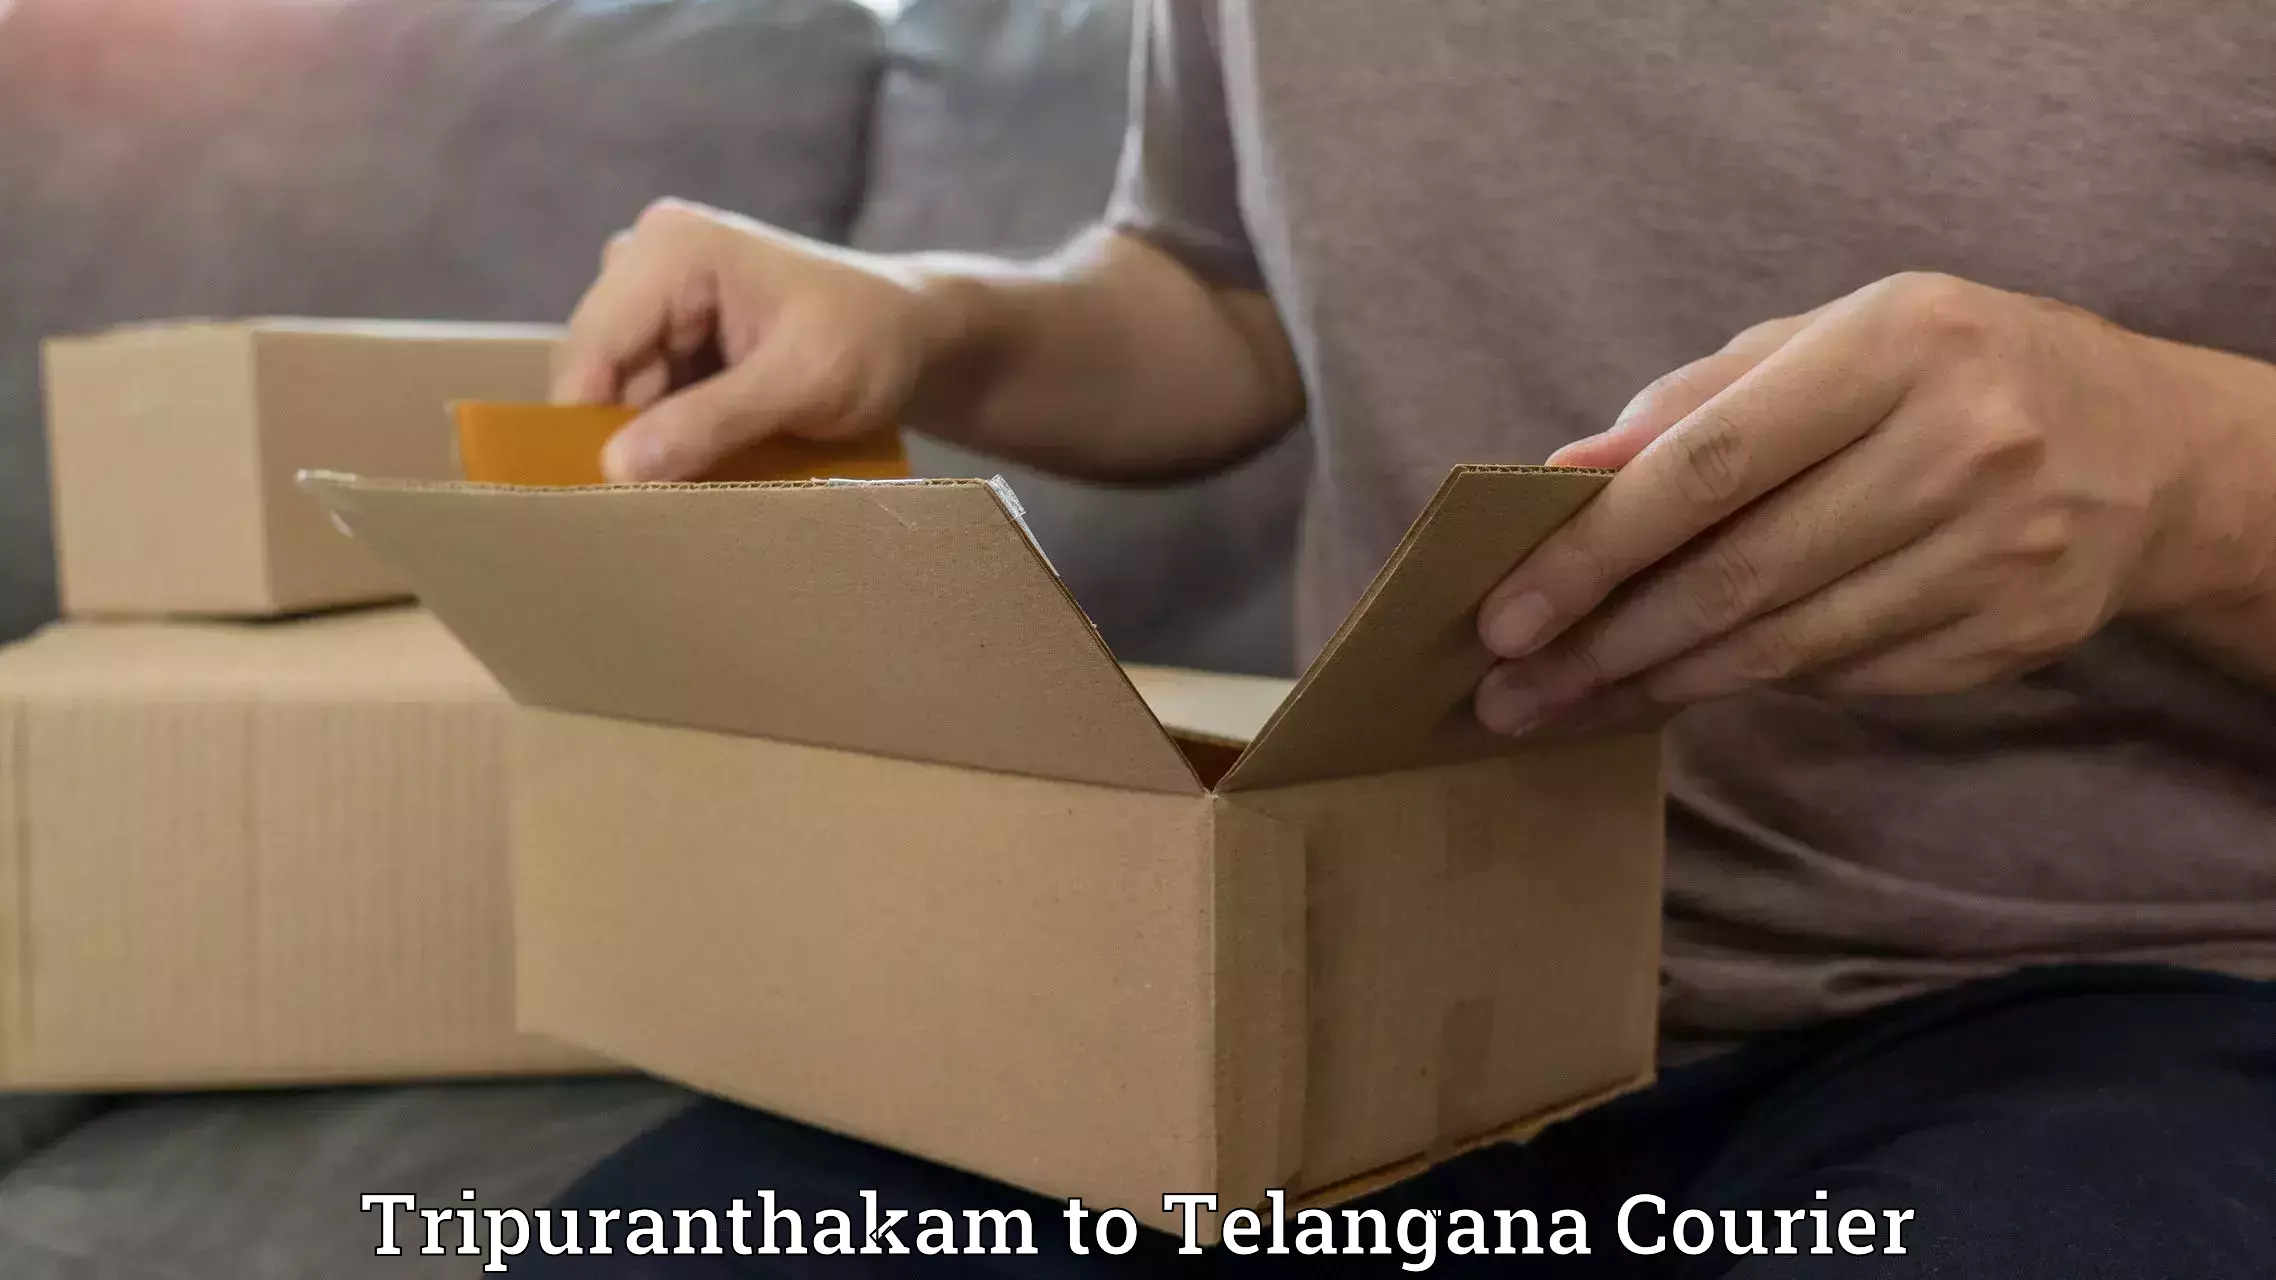 Urgent courier needs Tripuranthakam to Adilabad